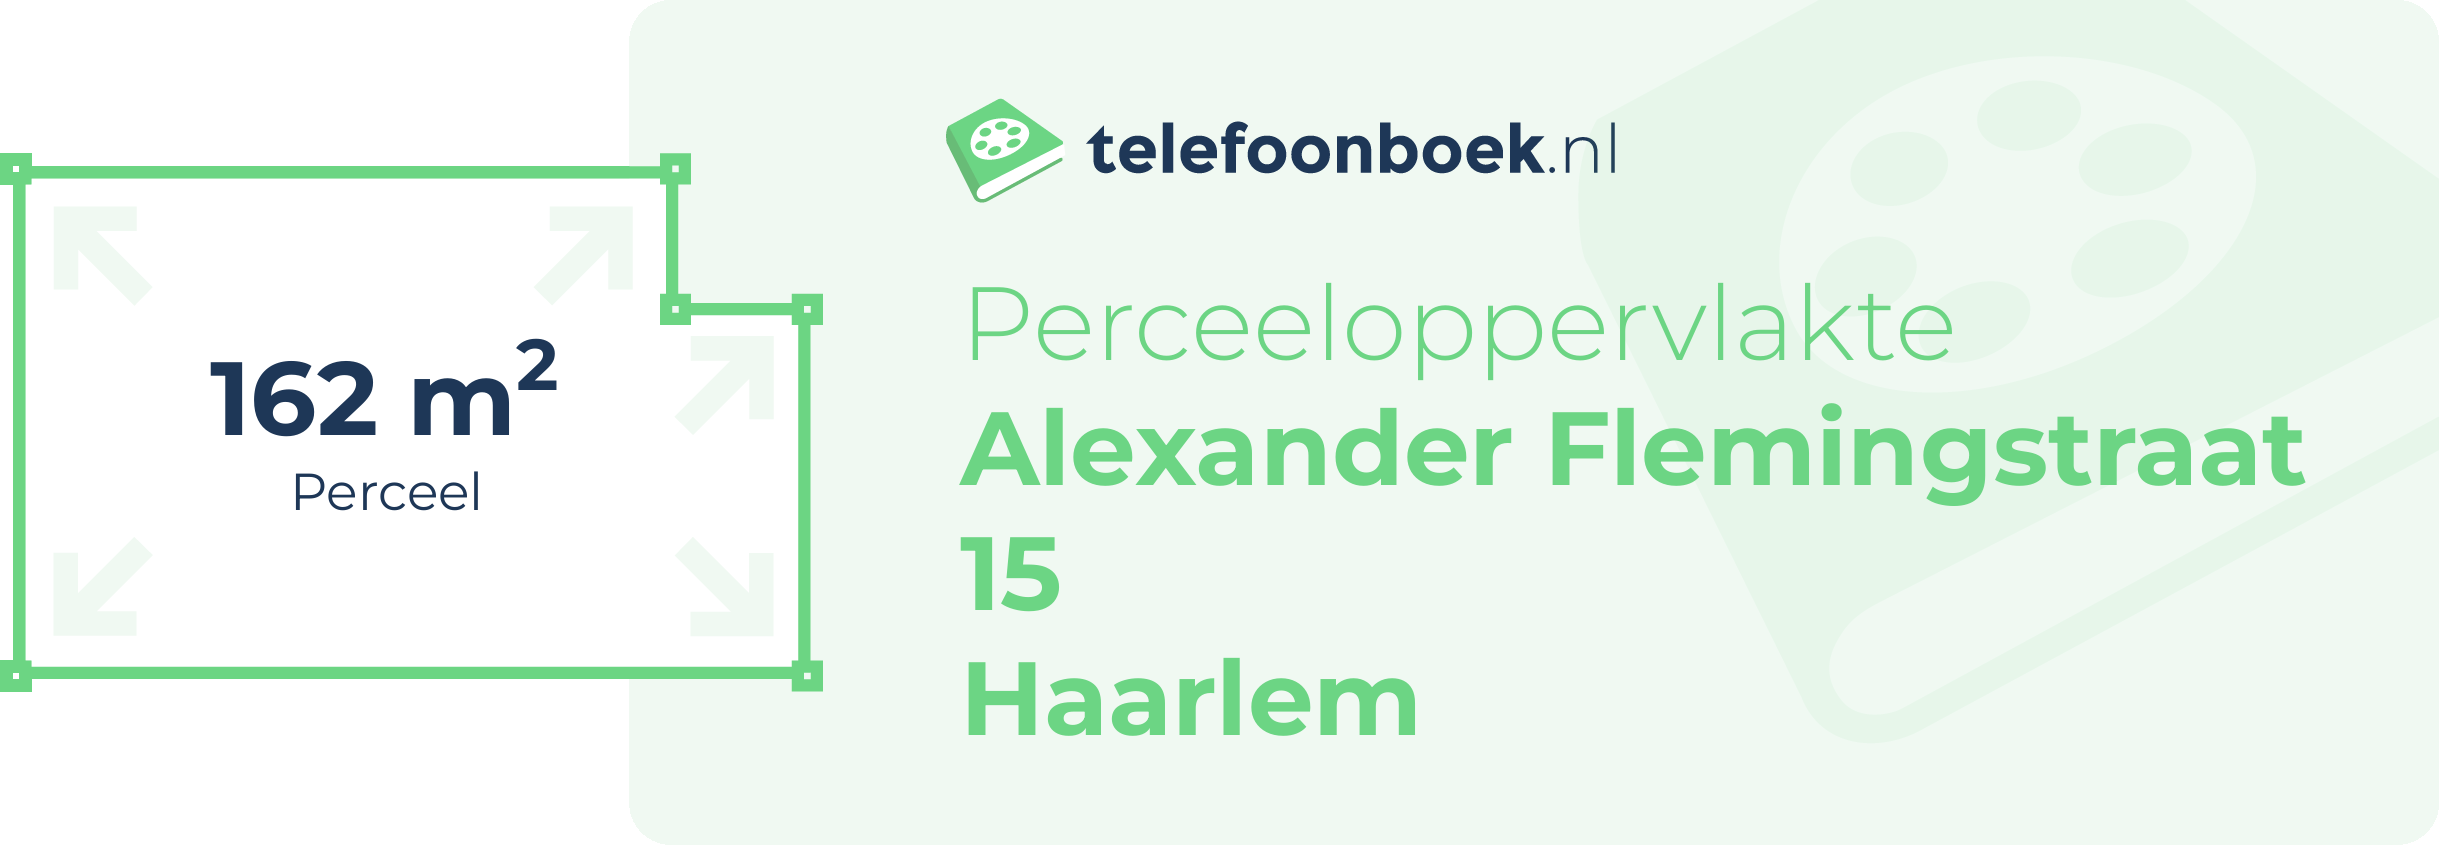 Perceeloppervlakte Alexander Flemingstraat 15 Haarlem